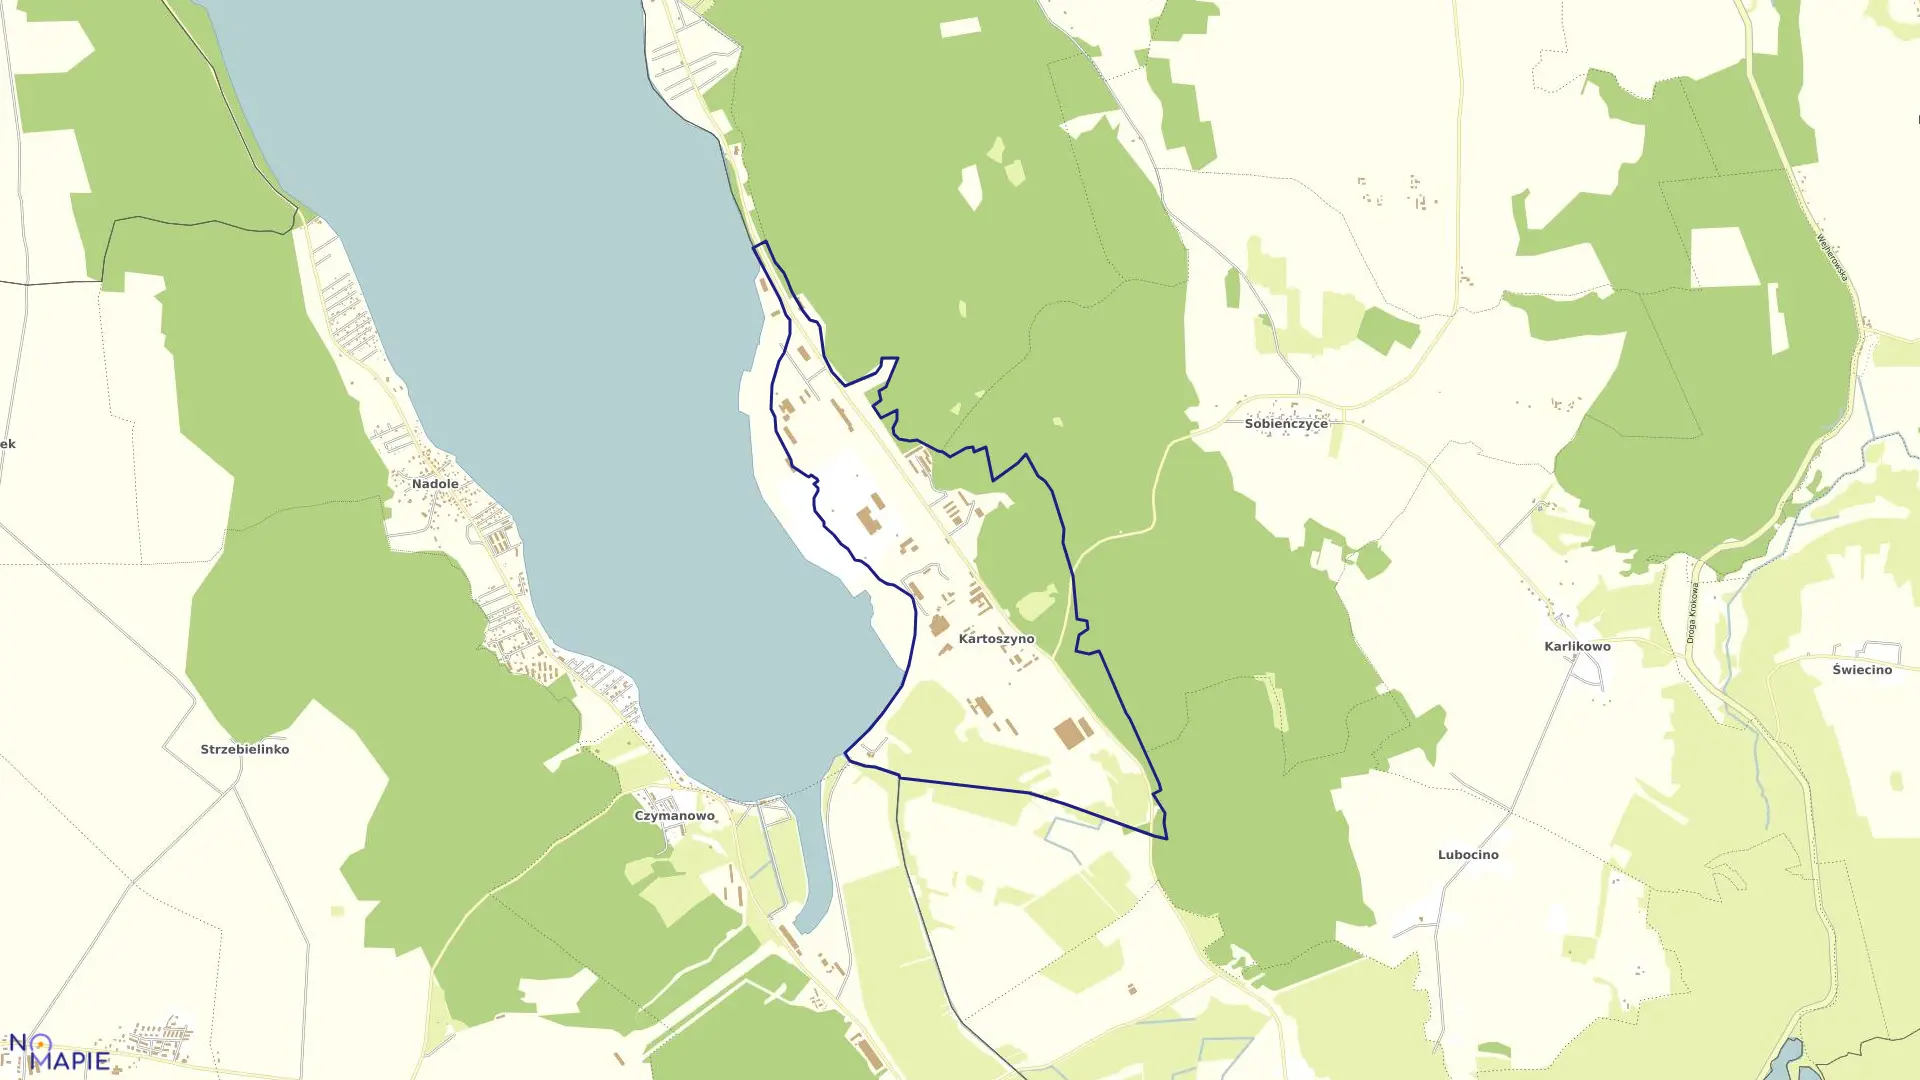 Mapa obrębu Kartoszyno w gminie Krokowa